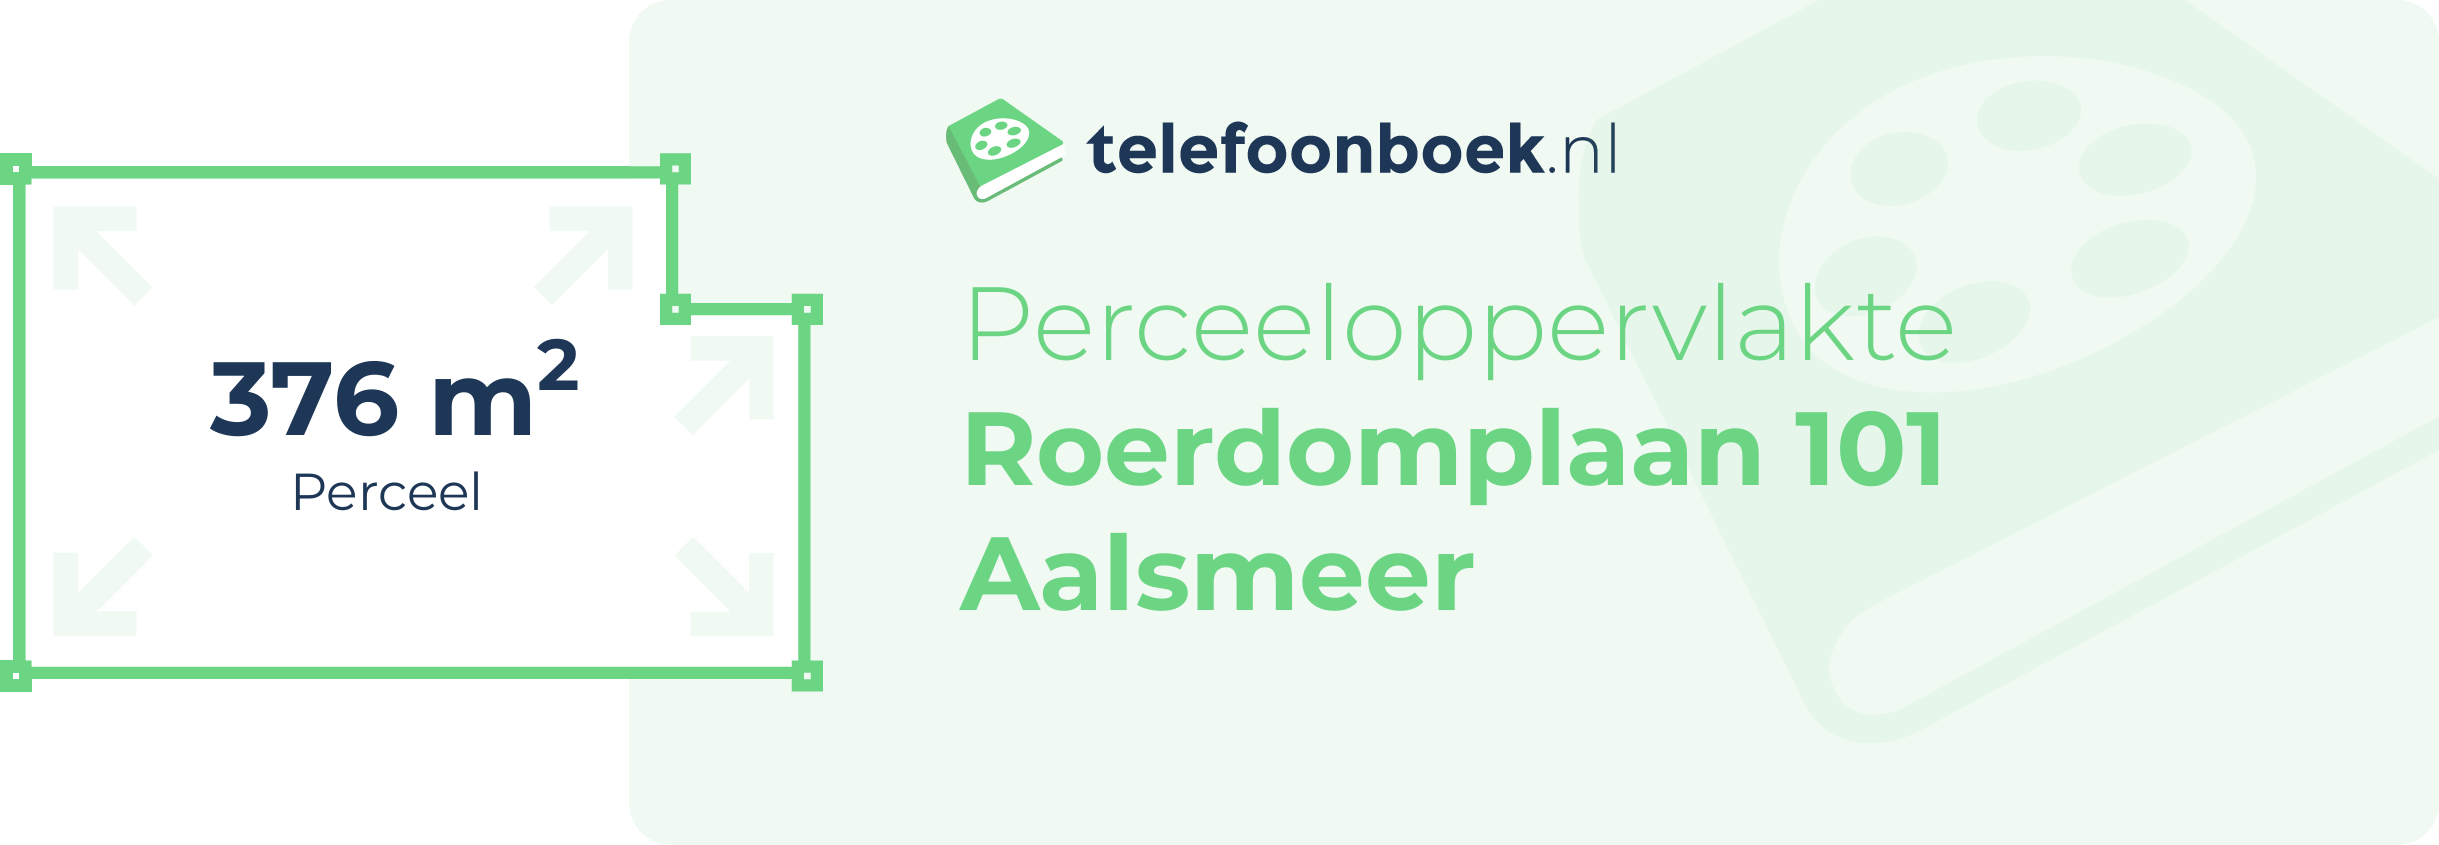 Perceeloppervlakte Roerdomplaan 101 Aalsmeer